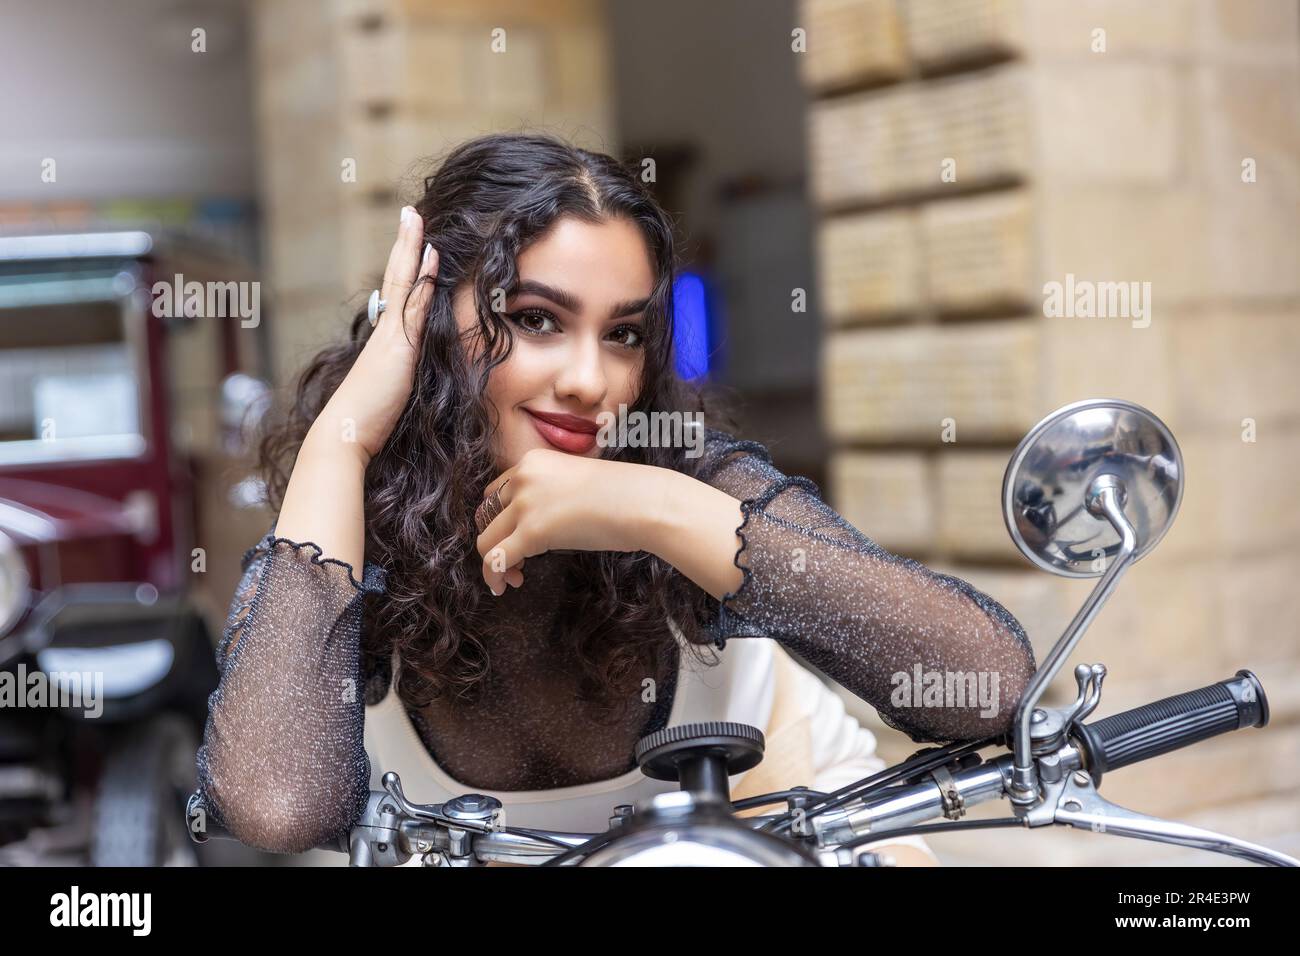 Portrait de sexy tannées fille assise sur une moto vintage avec la main dans ses cheveux. Horizontalement. Banque D'Images